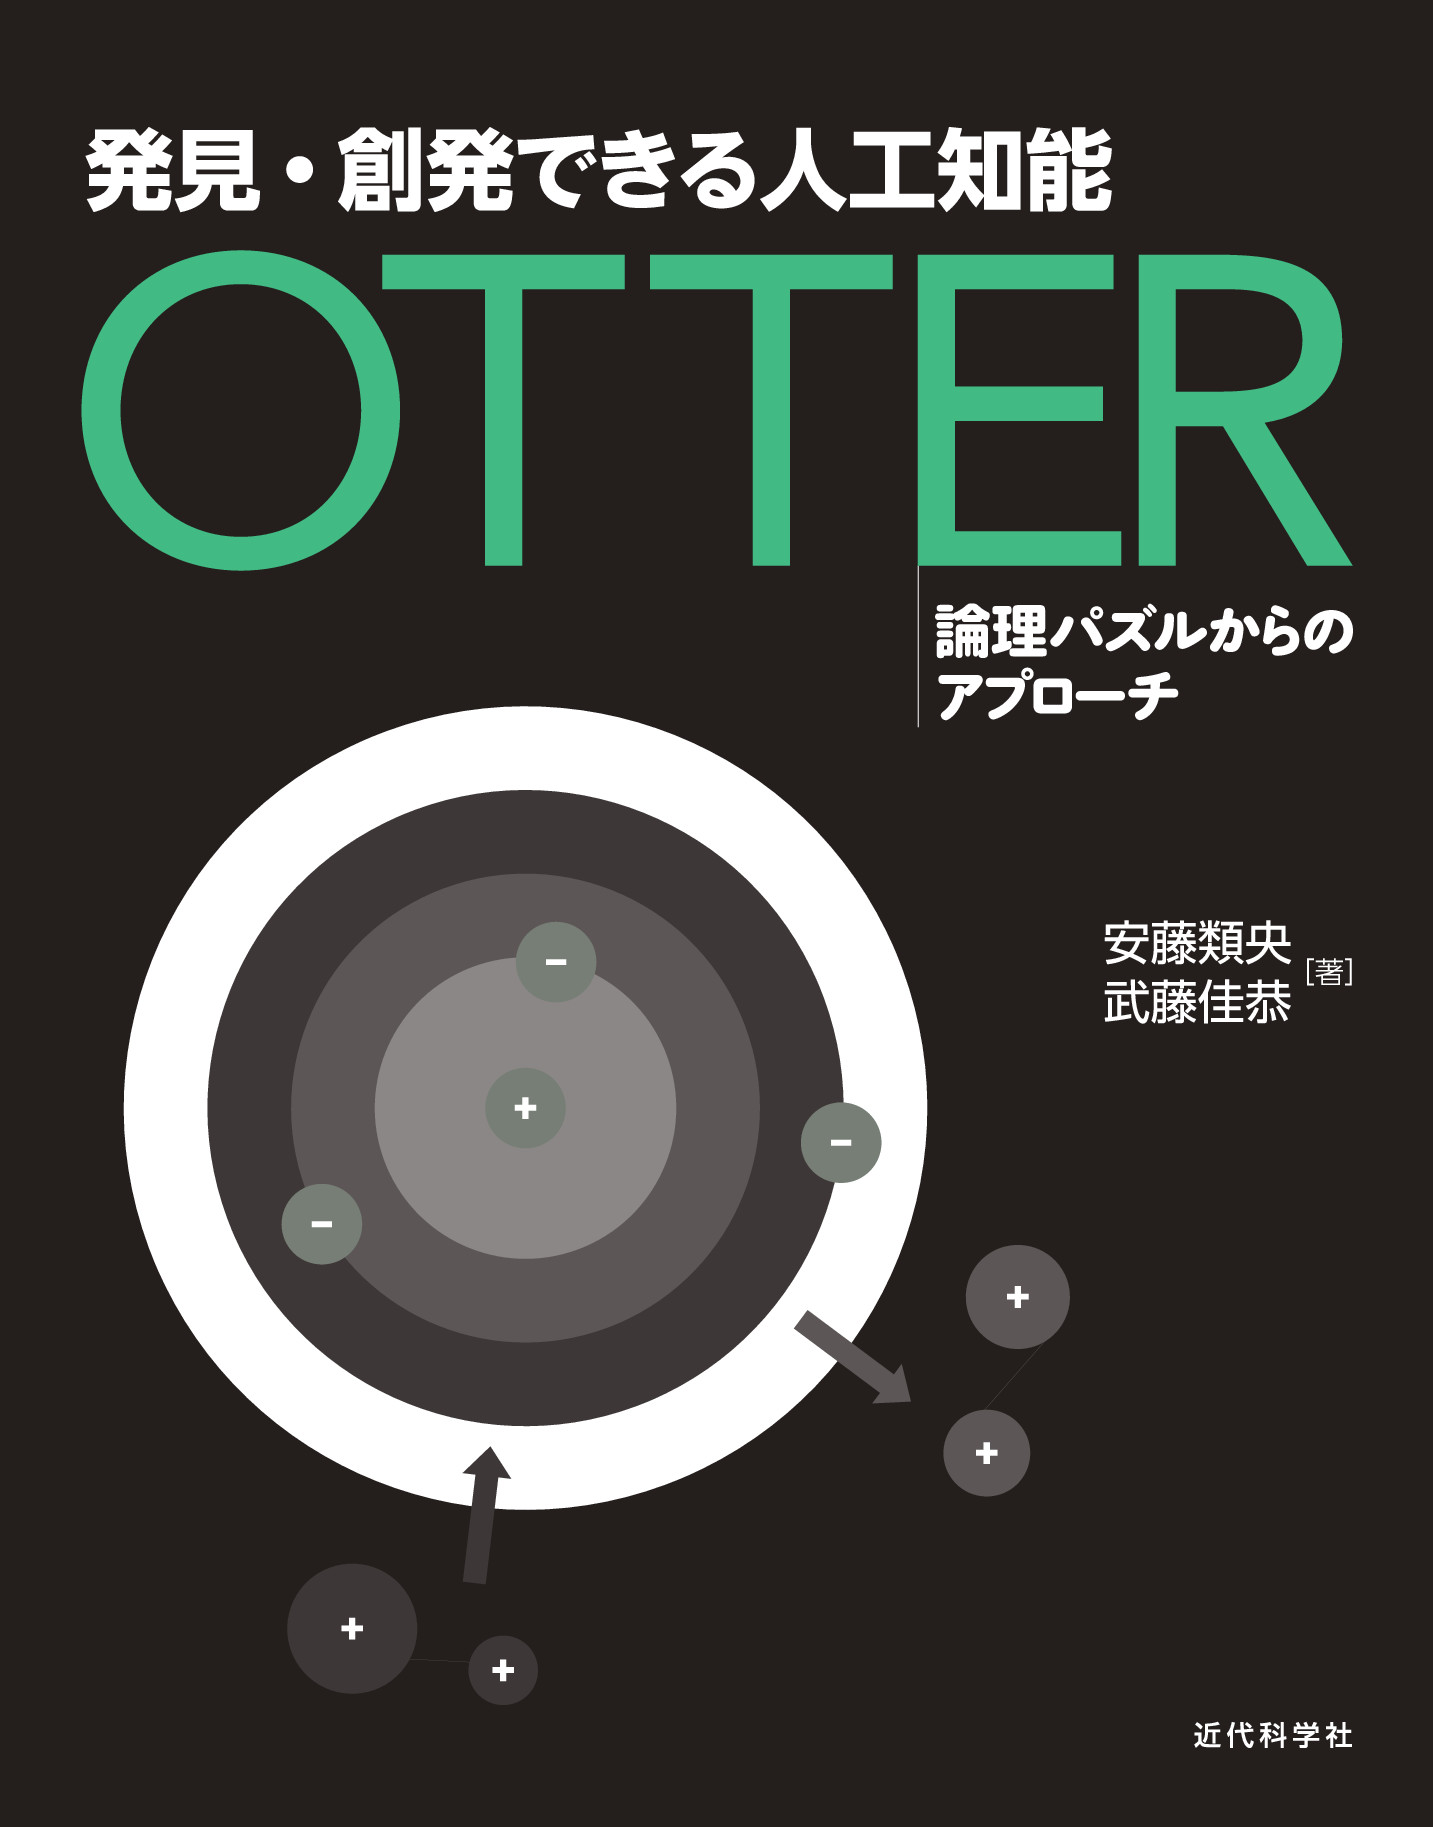 発見 創発できる人工知能 Otter 論理パズルからのアプローチ 委託 達人出版会